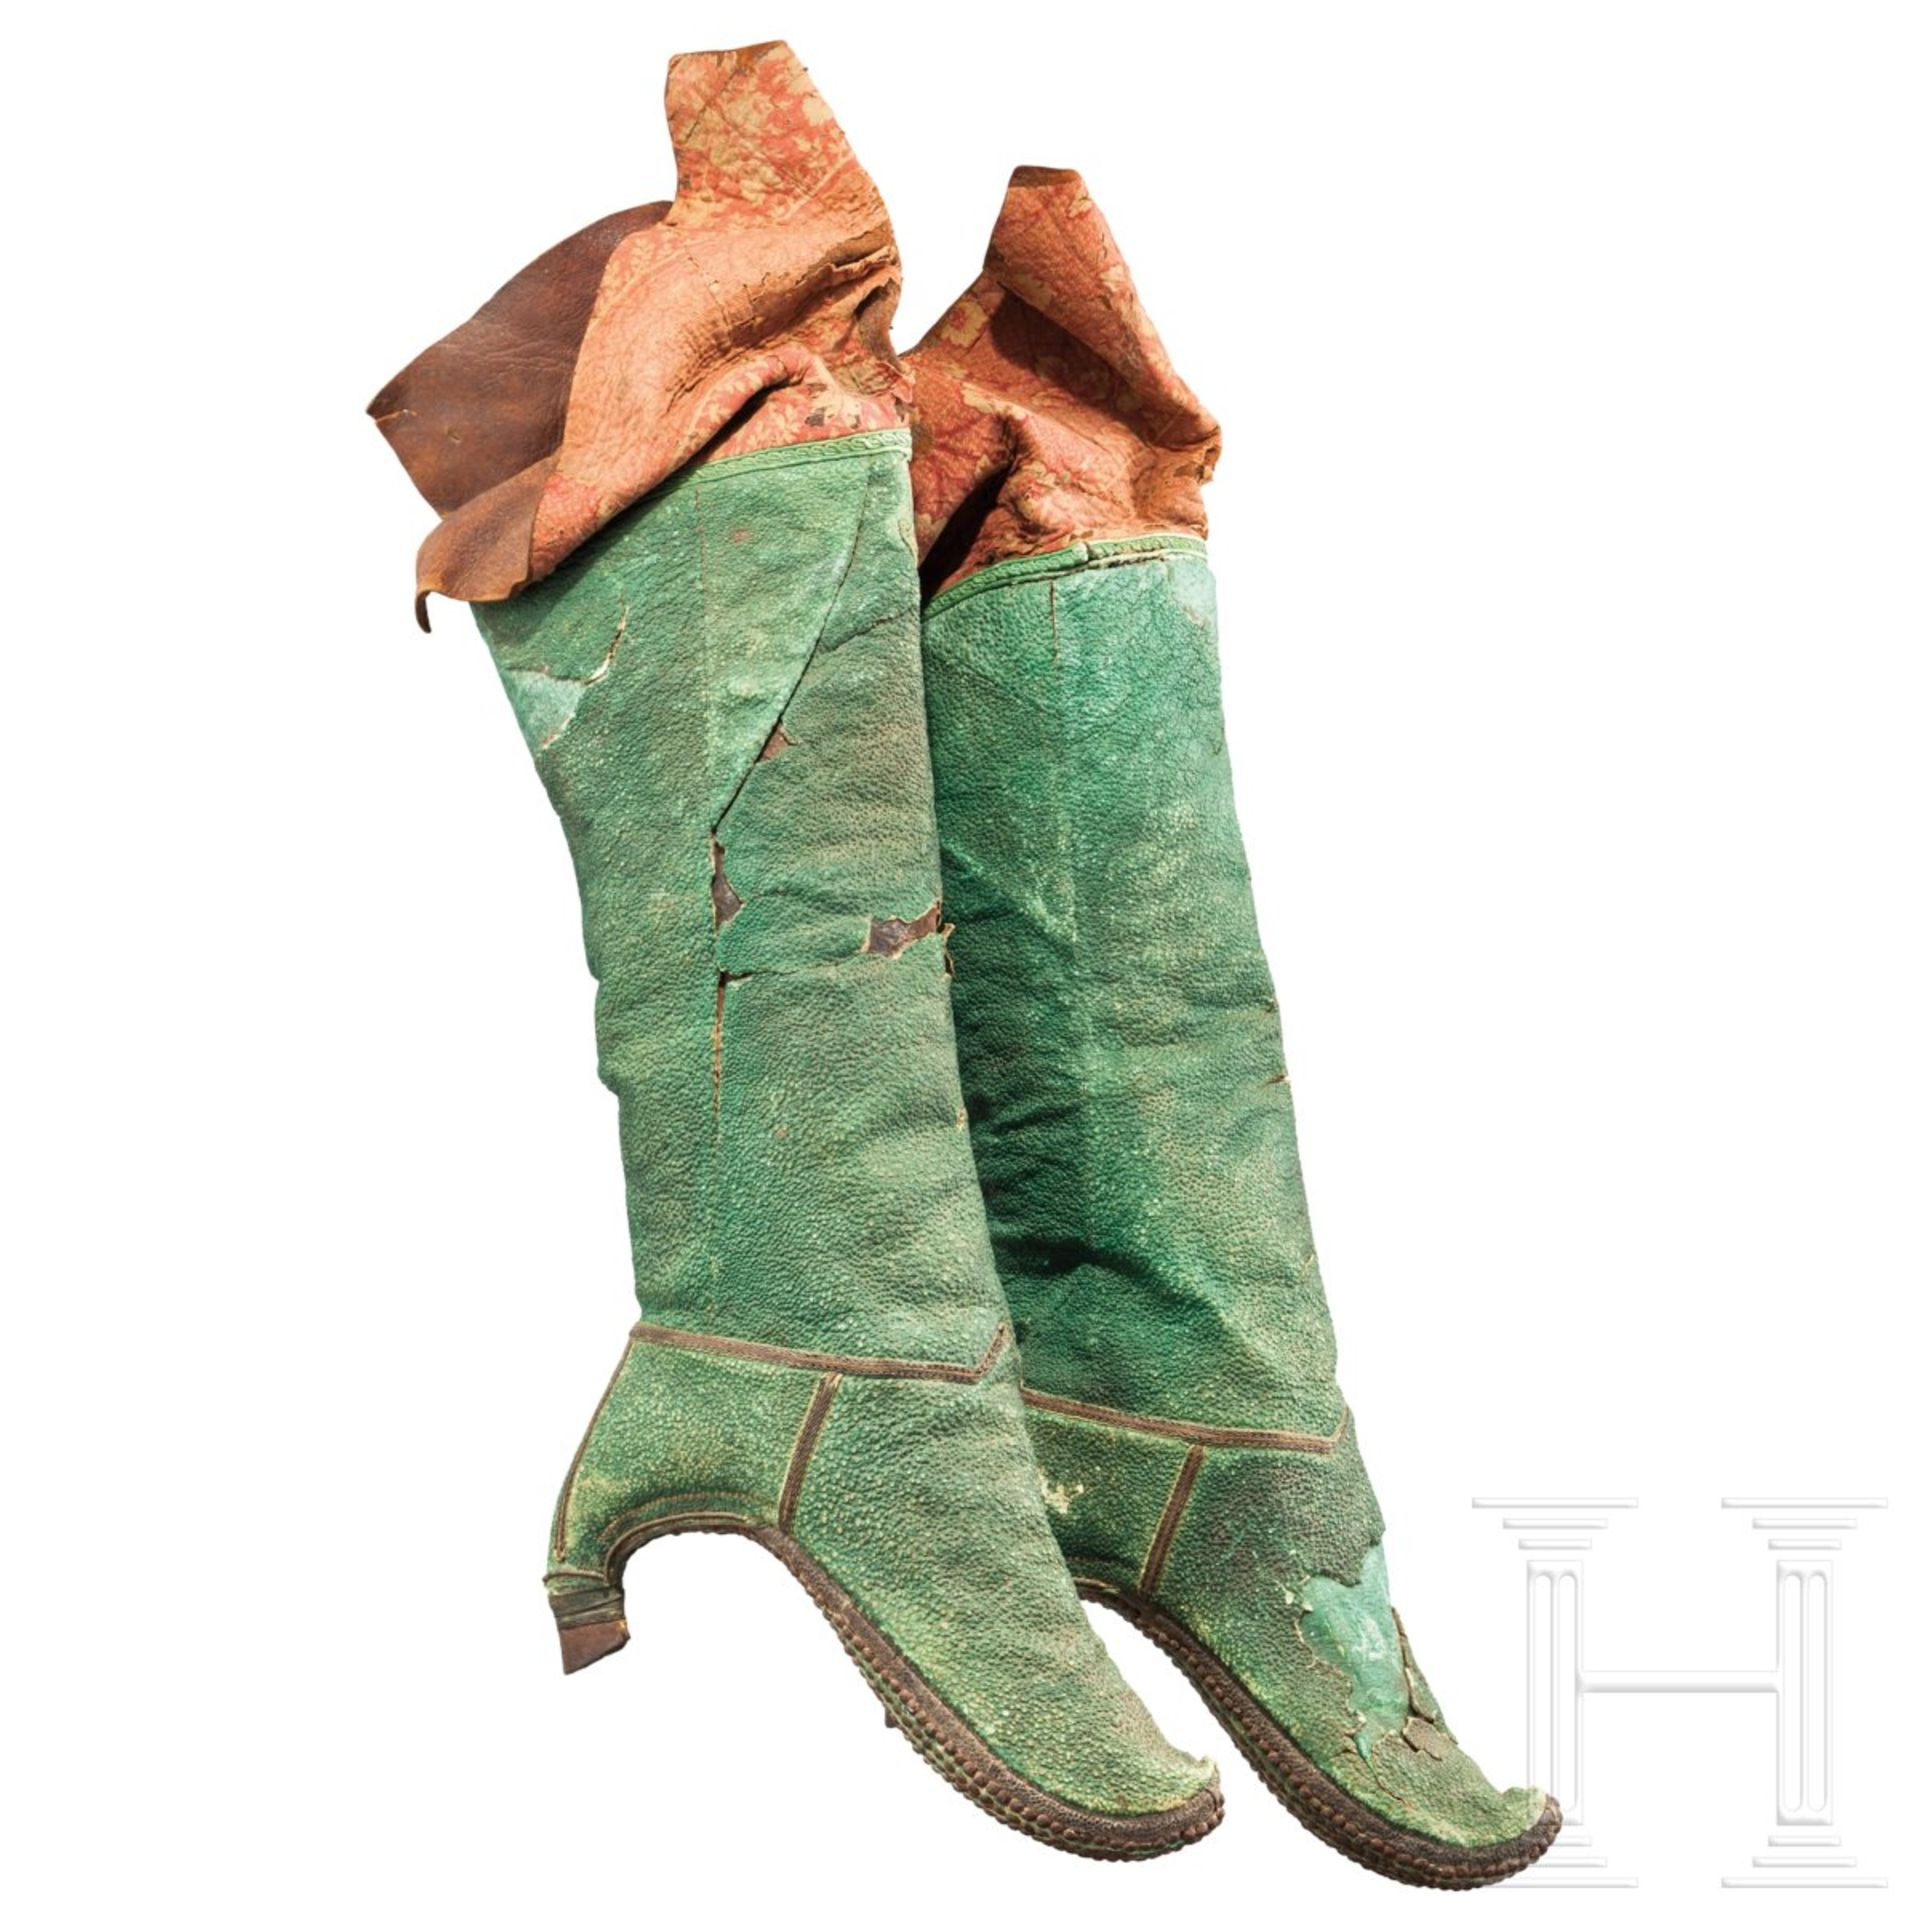 Seltenes Stiefel-Paar aus grünem Chagrinleder, Turkestan, 19. Jhdt.Aus zwei Lagen Leder und - Bild 2 aus 3